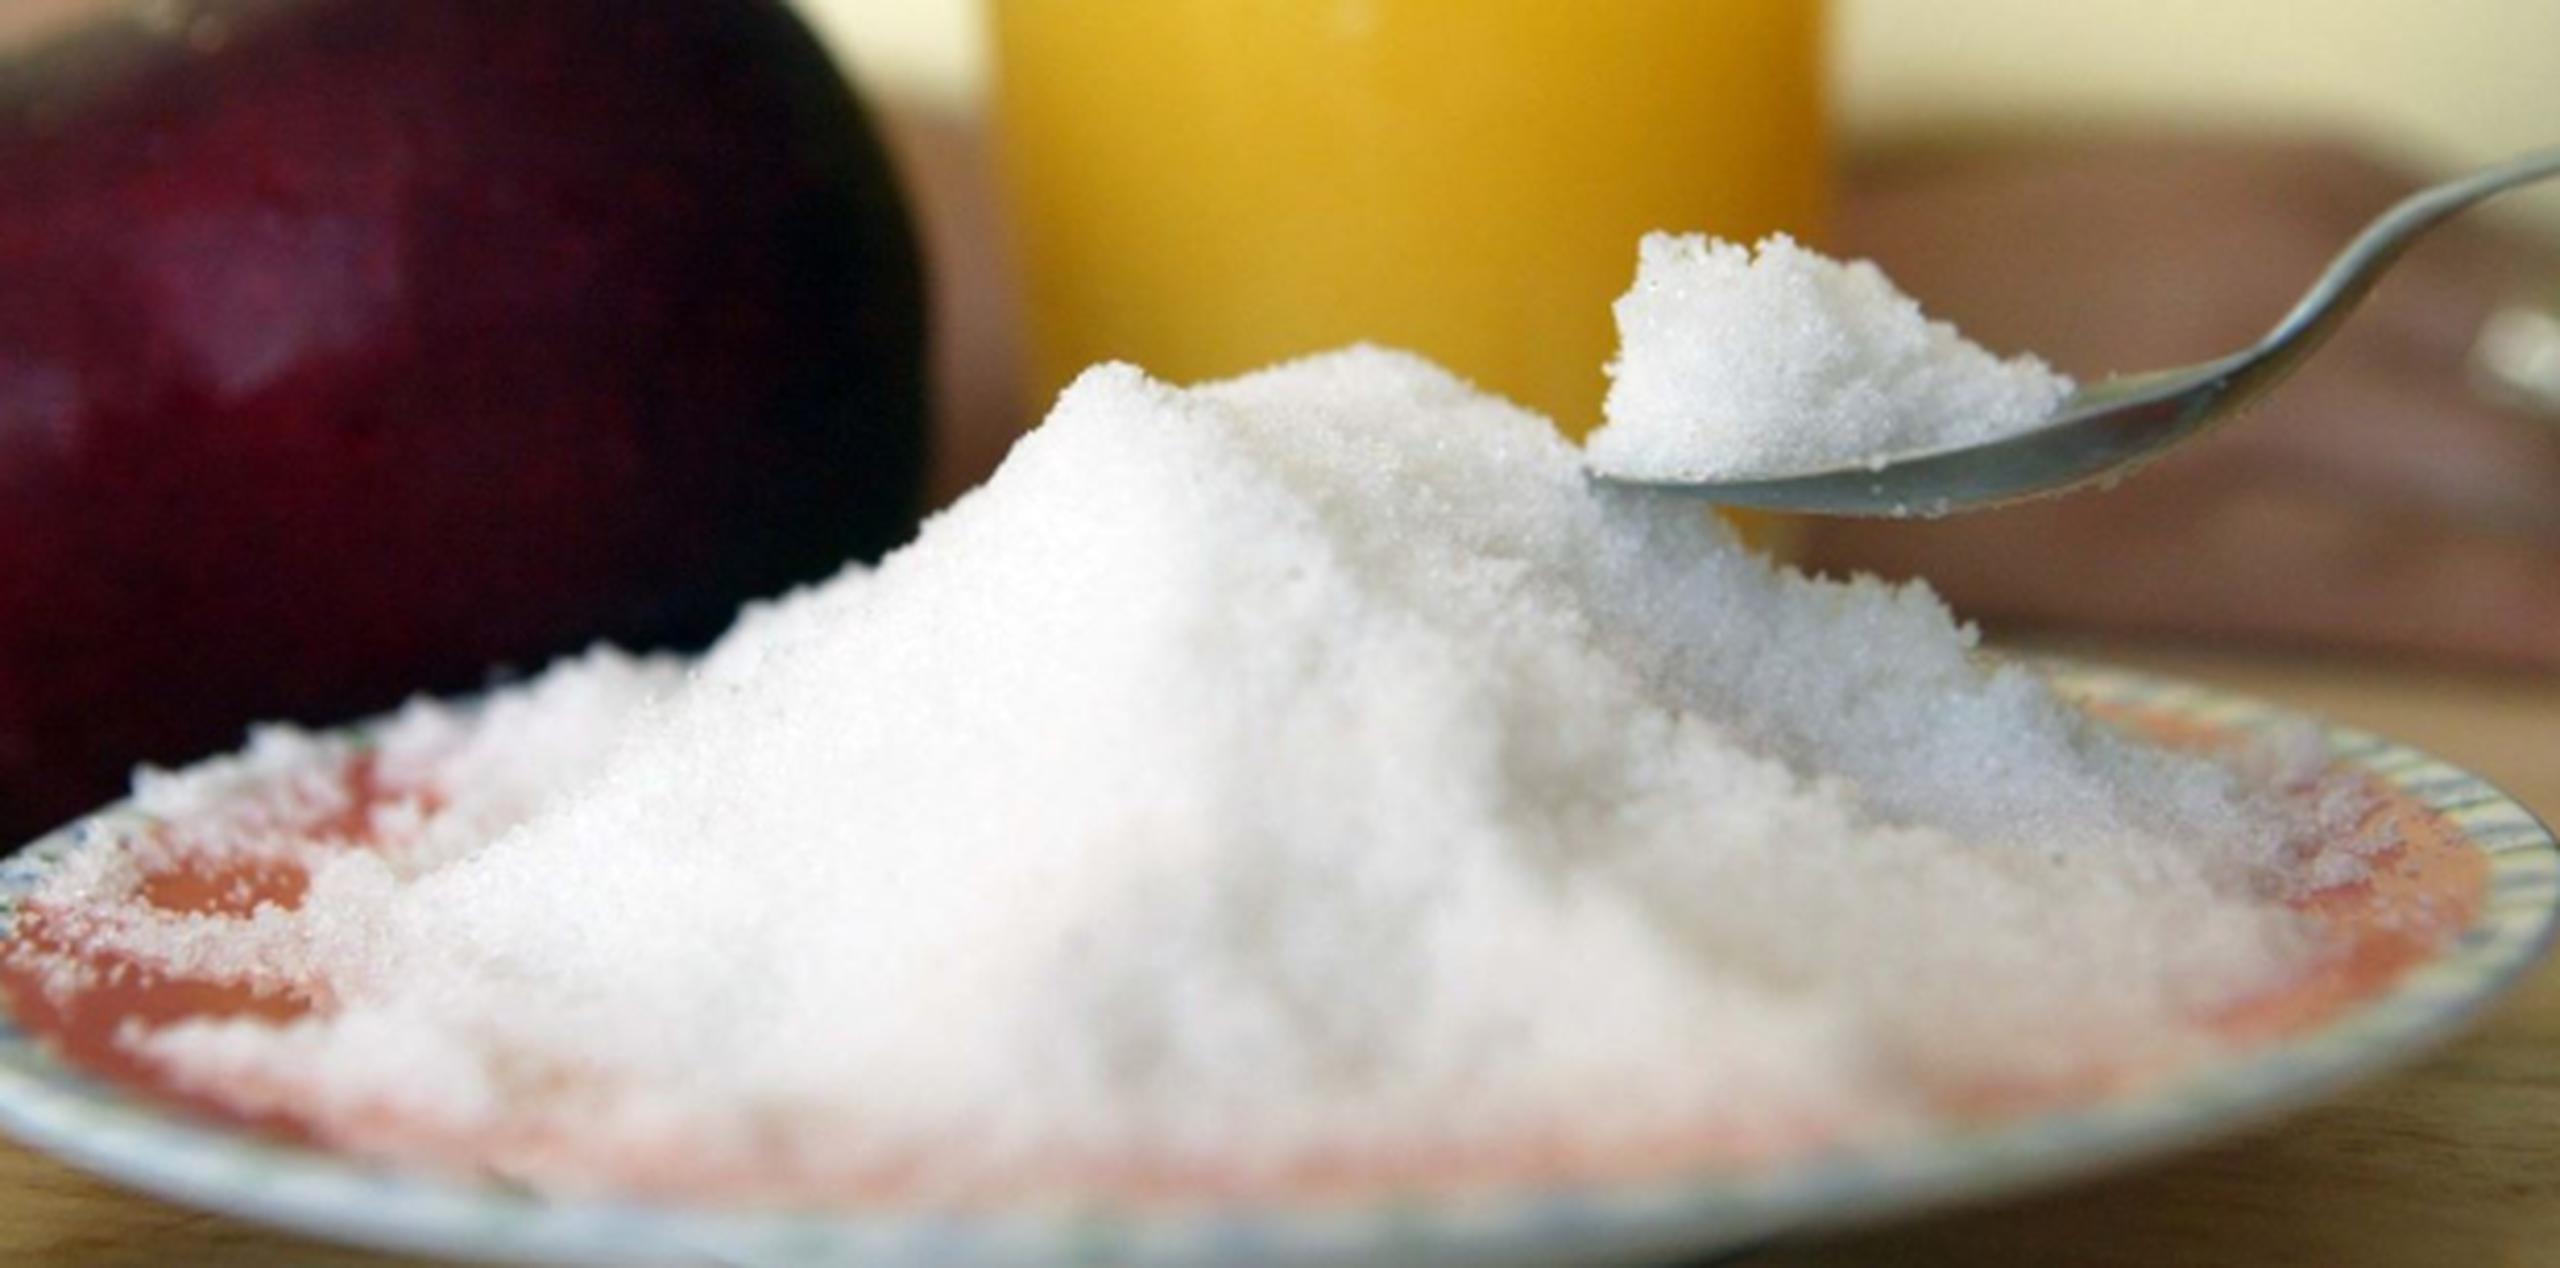 Por años, el azúcar ha sido apodado como "dulce veneno", e incluso hay quienes aseguran que es tan adictiva como los cigarrillos y la cocaína. (Archivo)